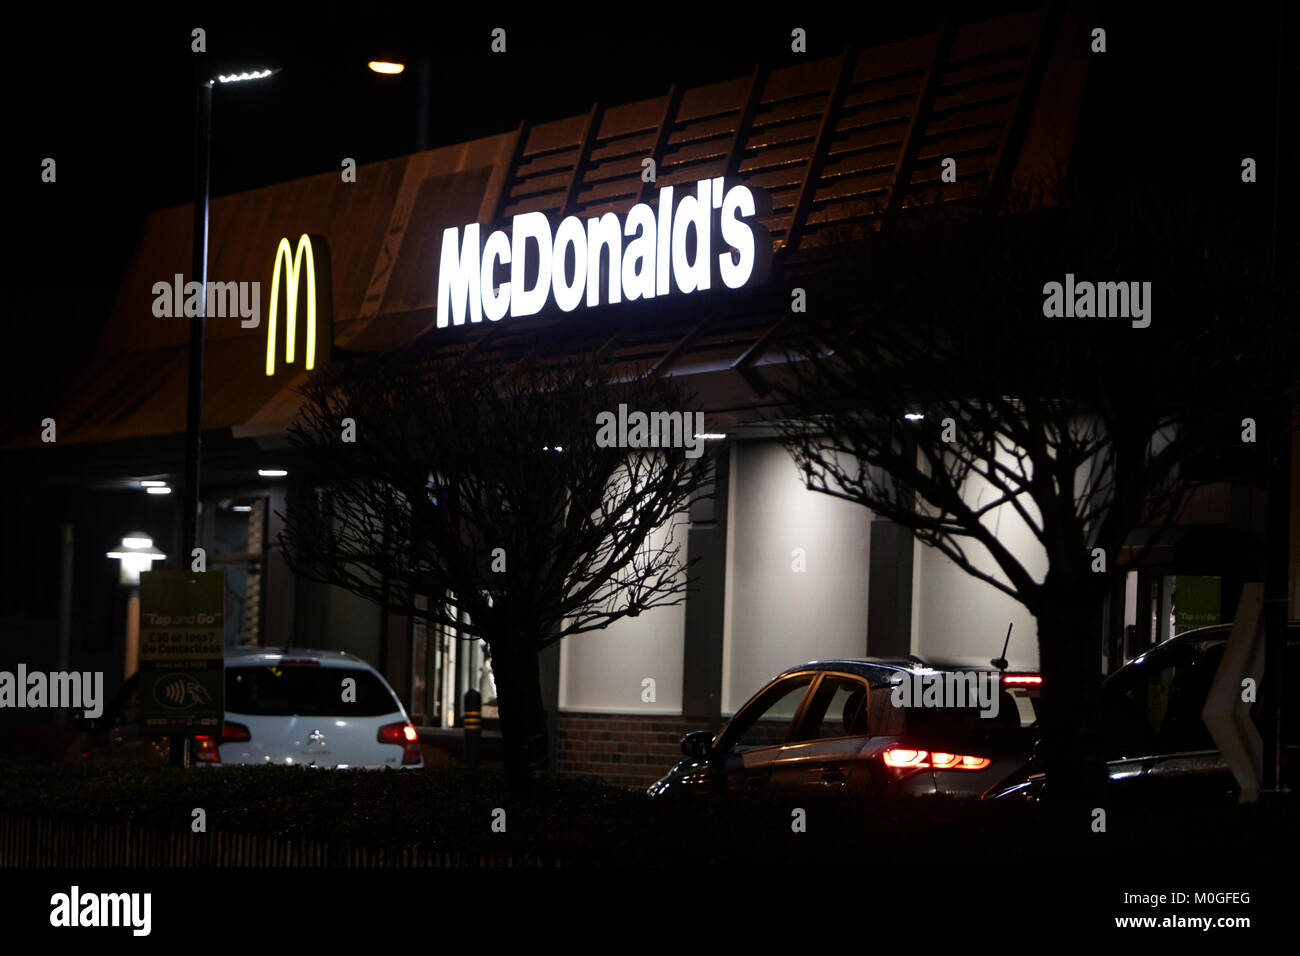 El restaurante mcdonalds conduzca a lo largo de la noche en el reino unido Foto de stock